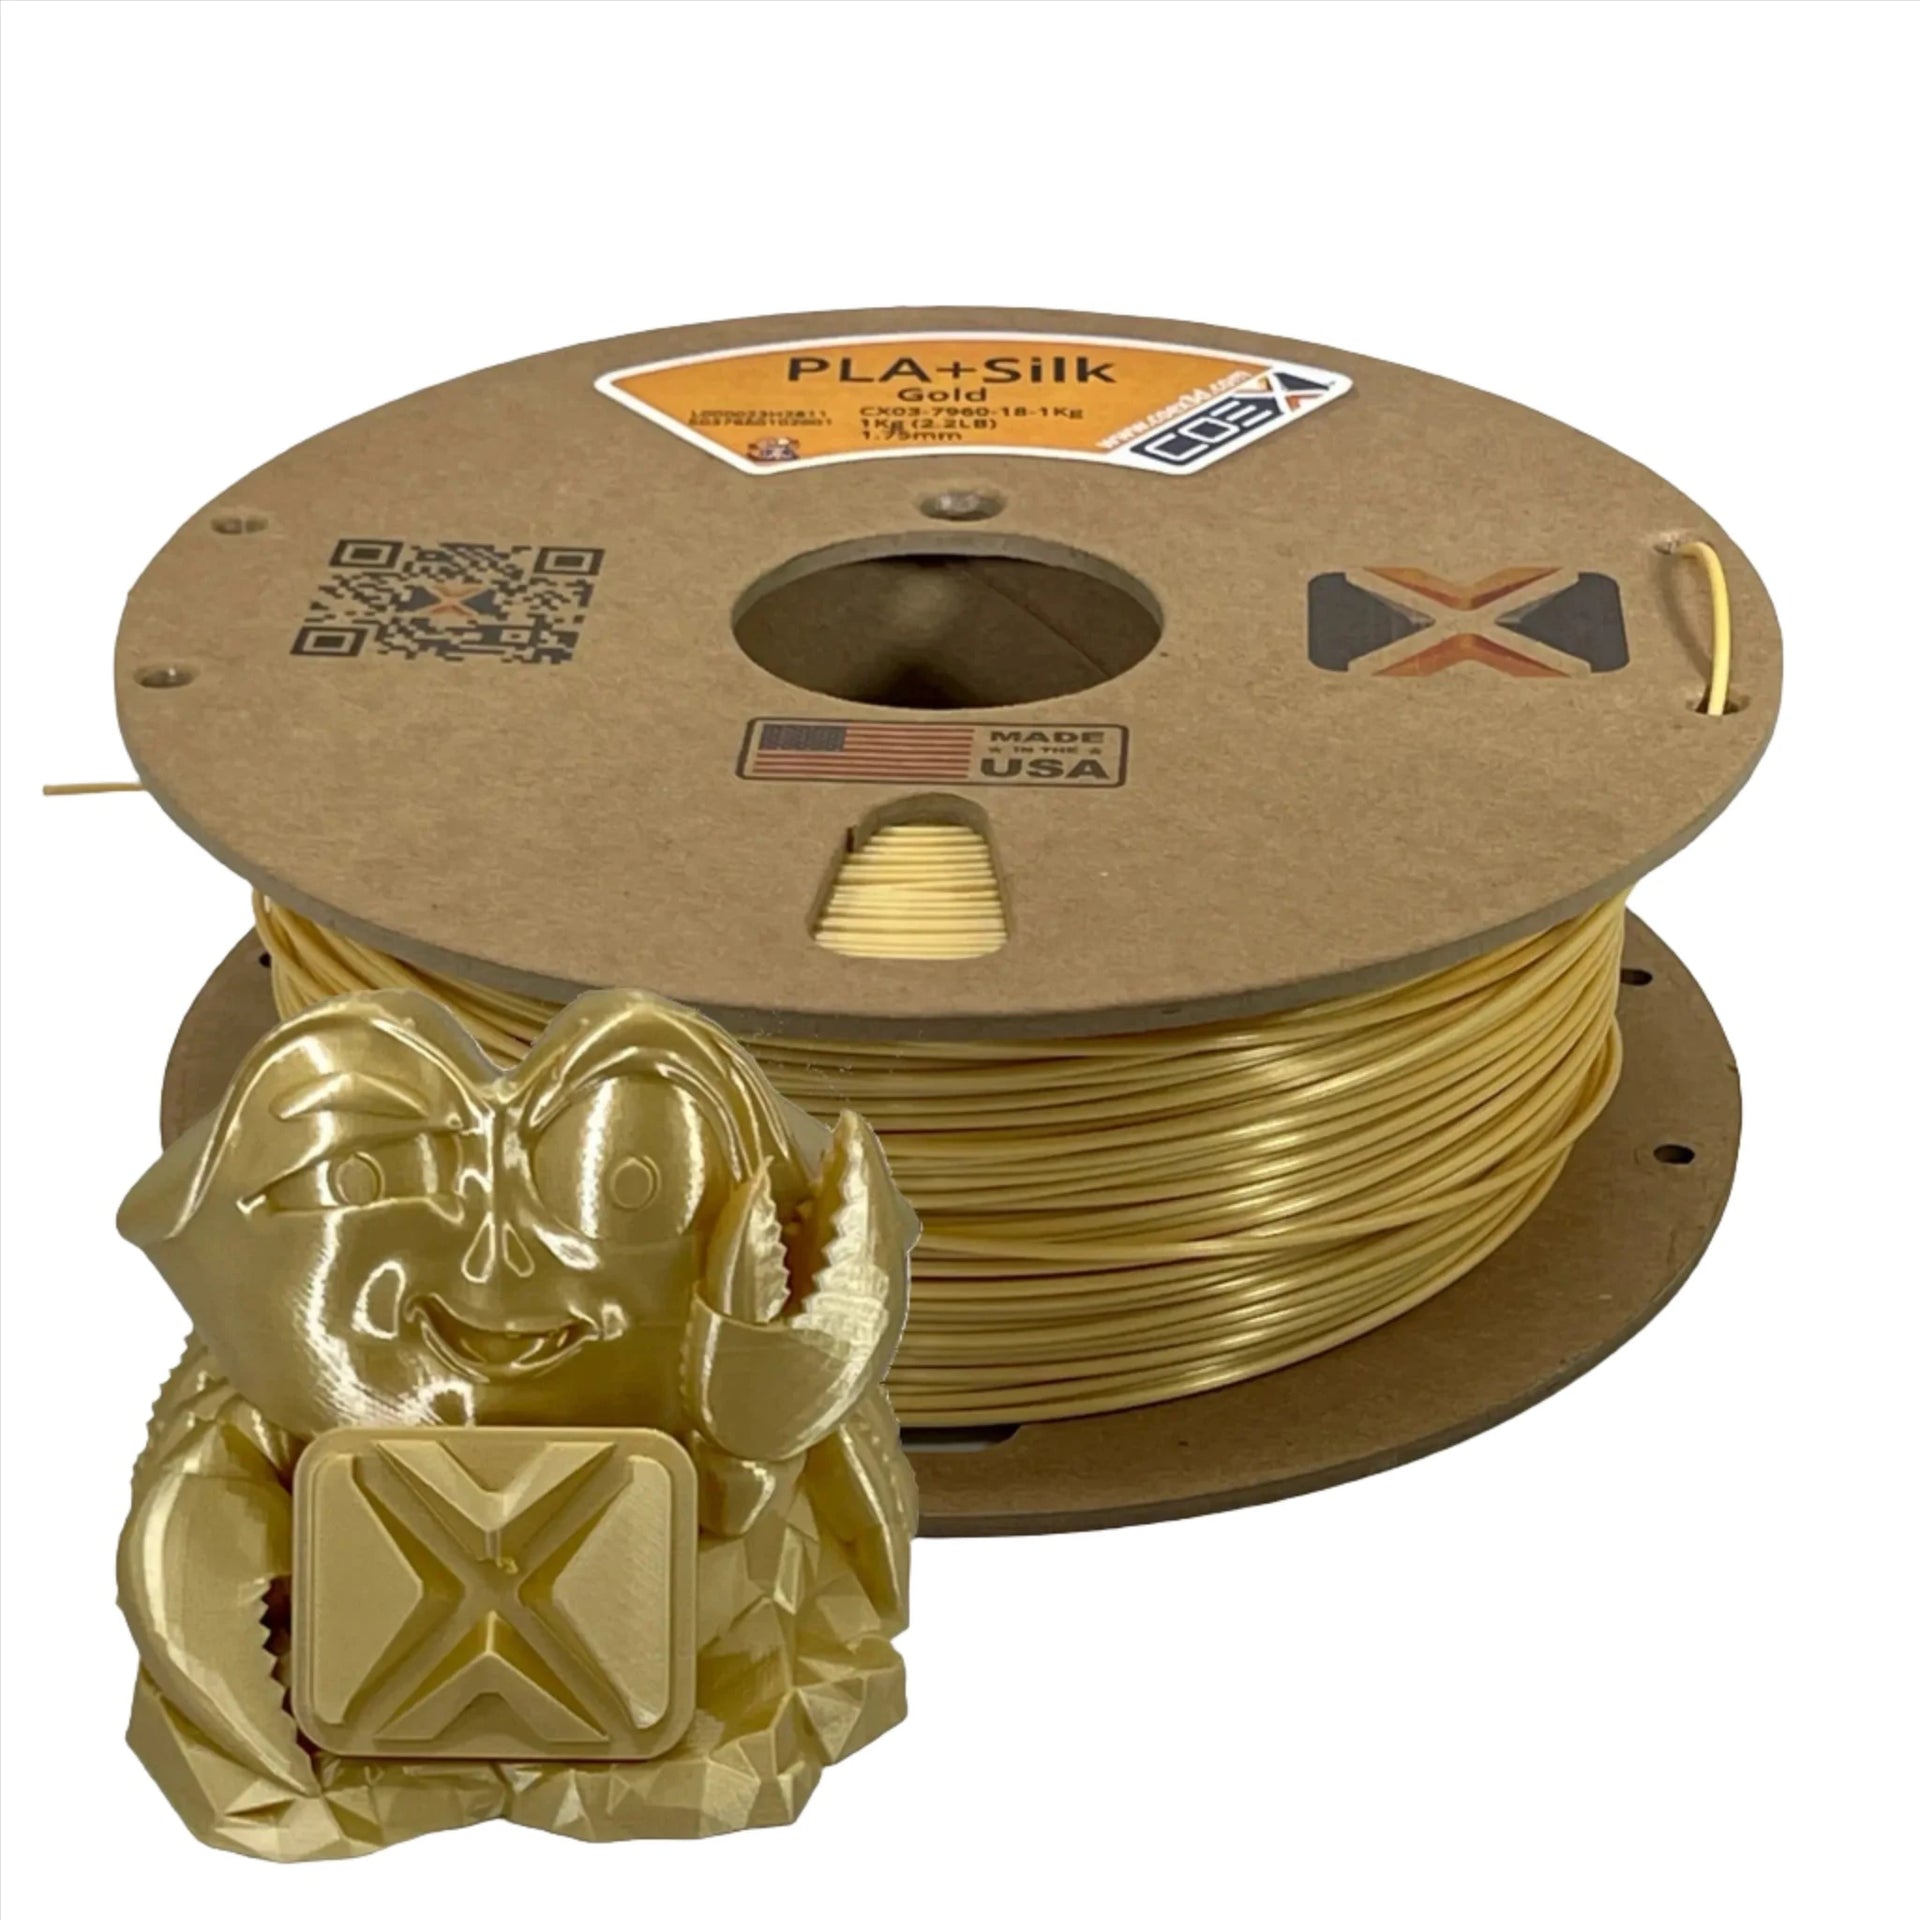 True Gold v2 PLA Filament